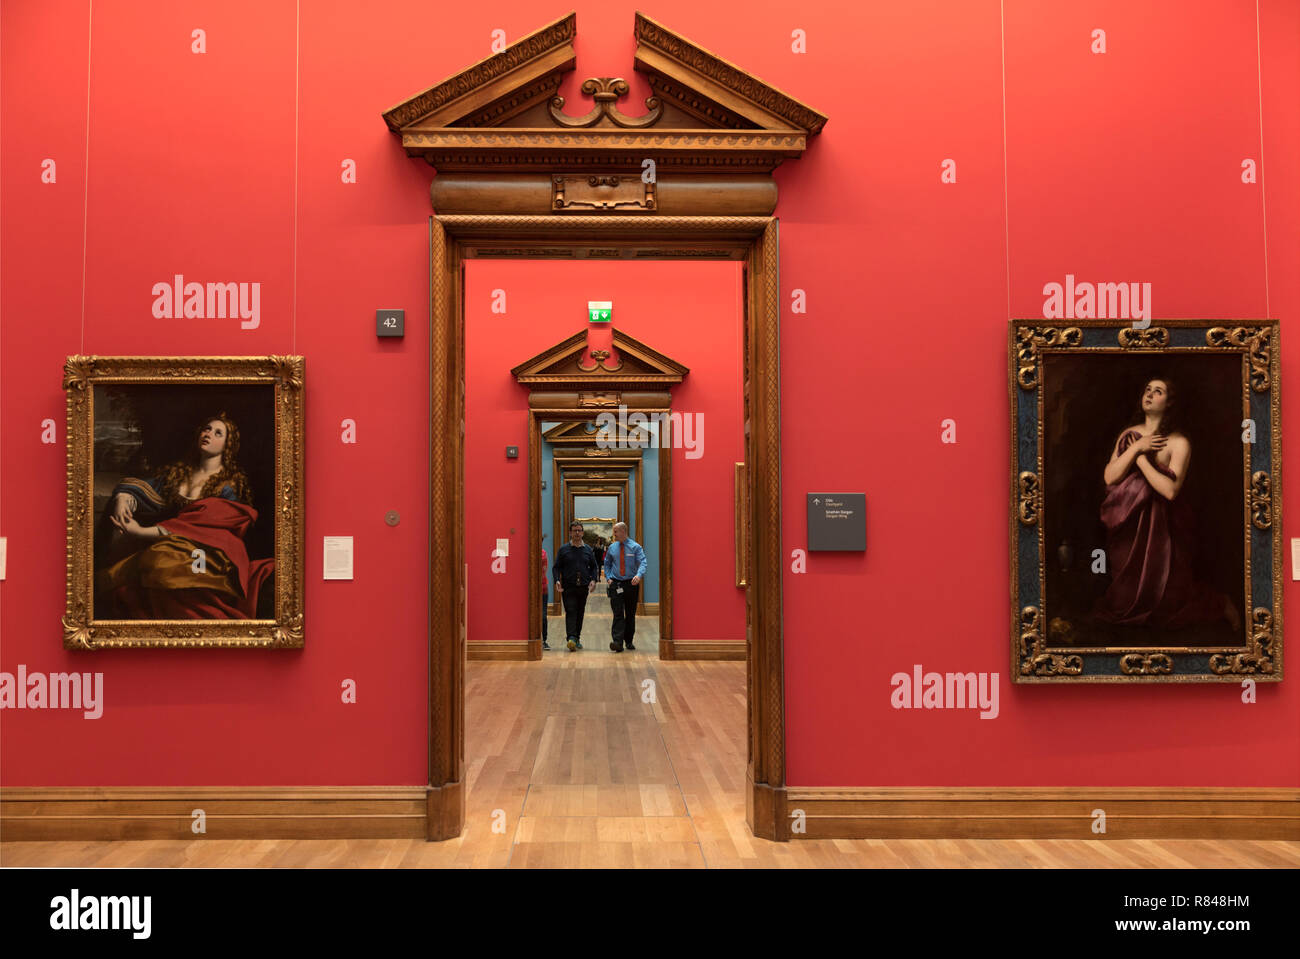 Irlande, Dublin, Galerie nationale d'Irlande, intérieur avec travaux d'art et couloir de recul Banque D'Images